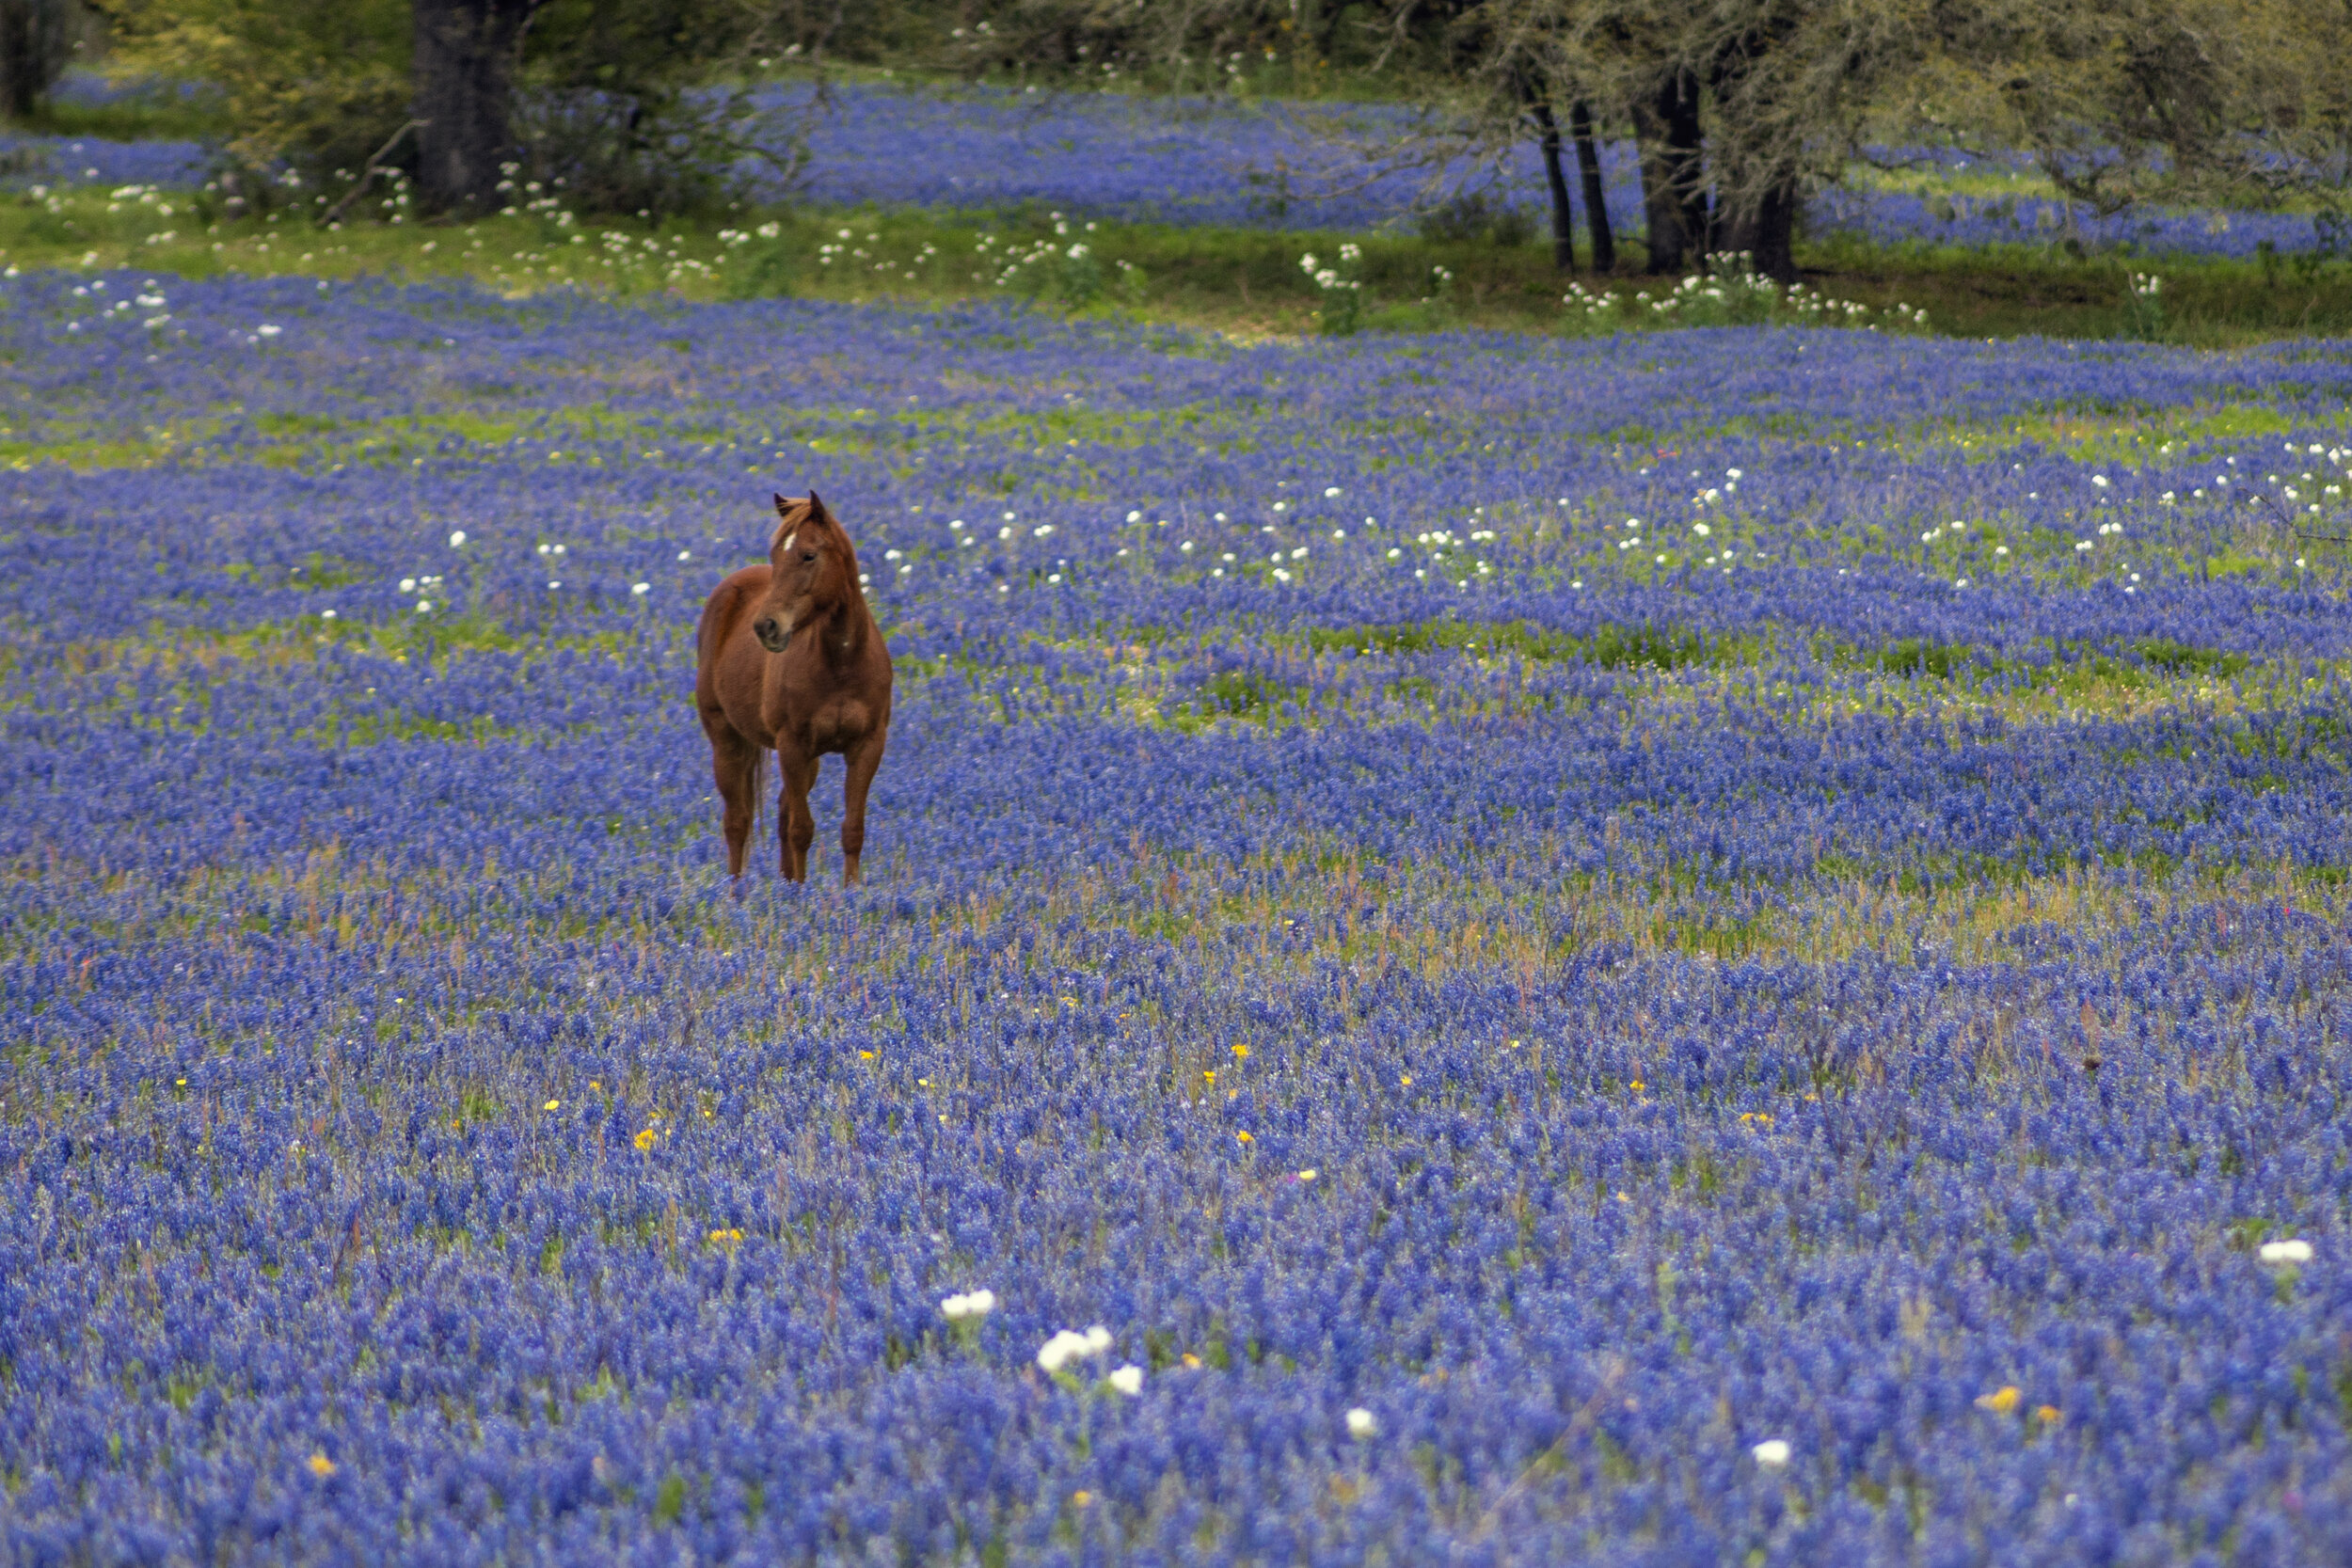 Best bluebonnet spots, Texas travel guide, Jason Weingart photography, Nature's spectacle, 2500x1670 HD Desktop